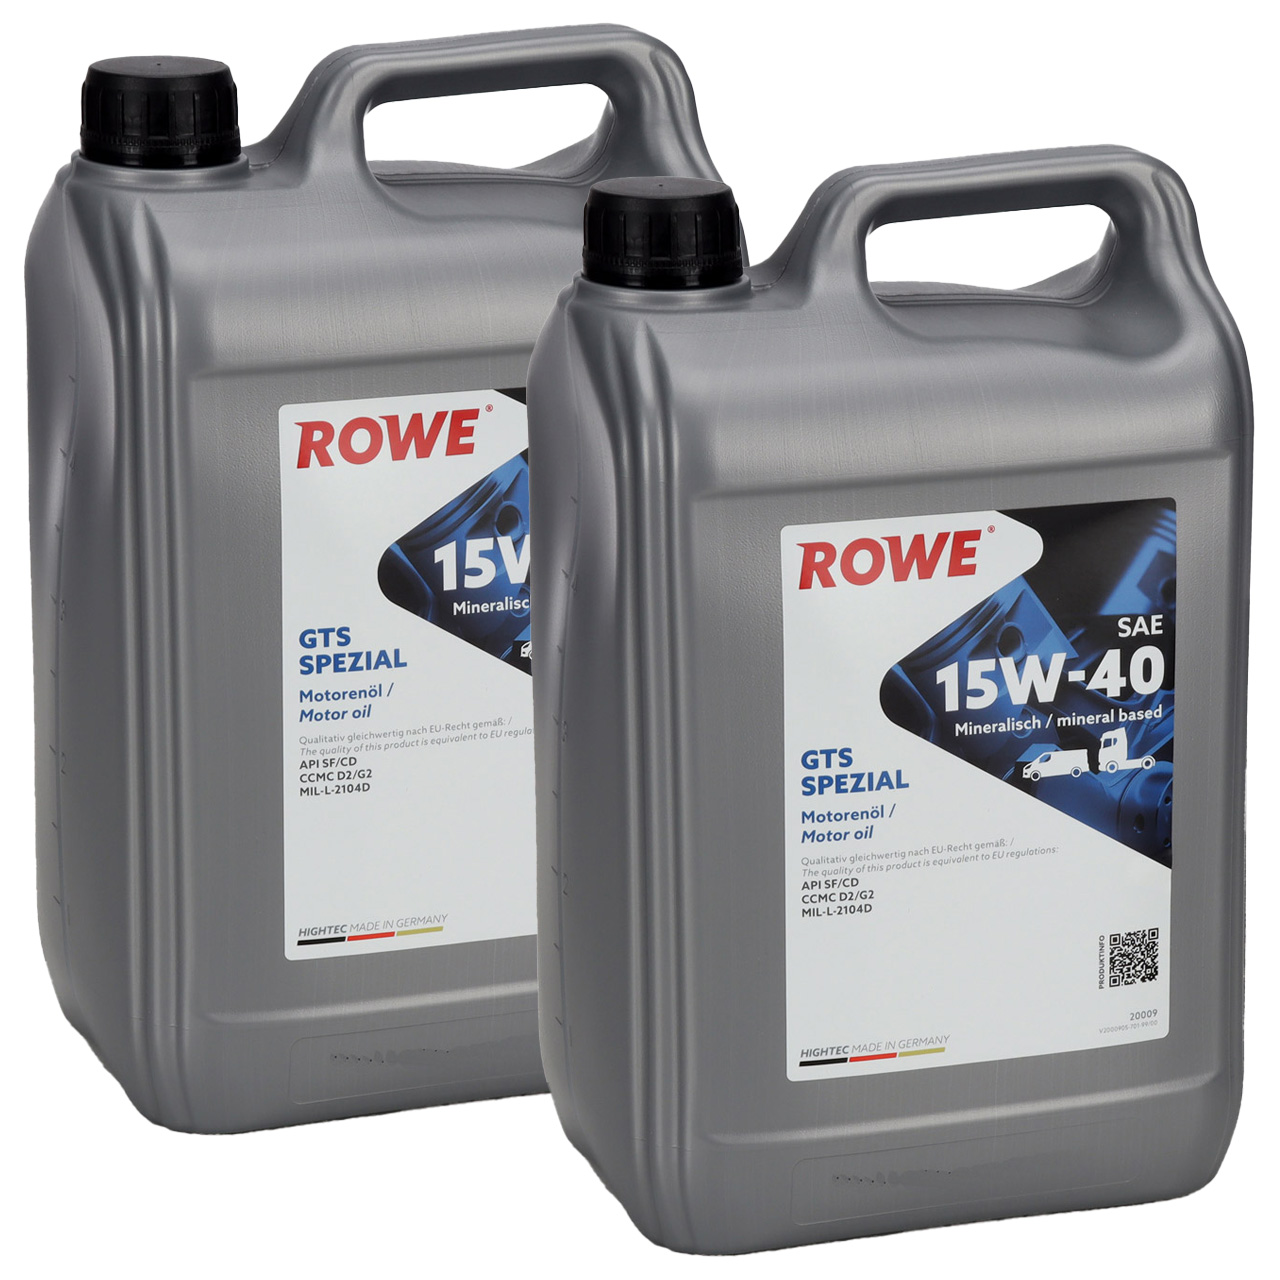 10L 10 Liter ROWE GTS SPEZIAL 15W-40 15W40 Motoröl Öl API SF/CD CCMC D/G2 MIL-L-2104D